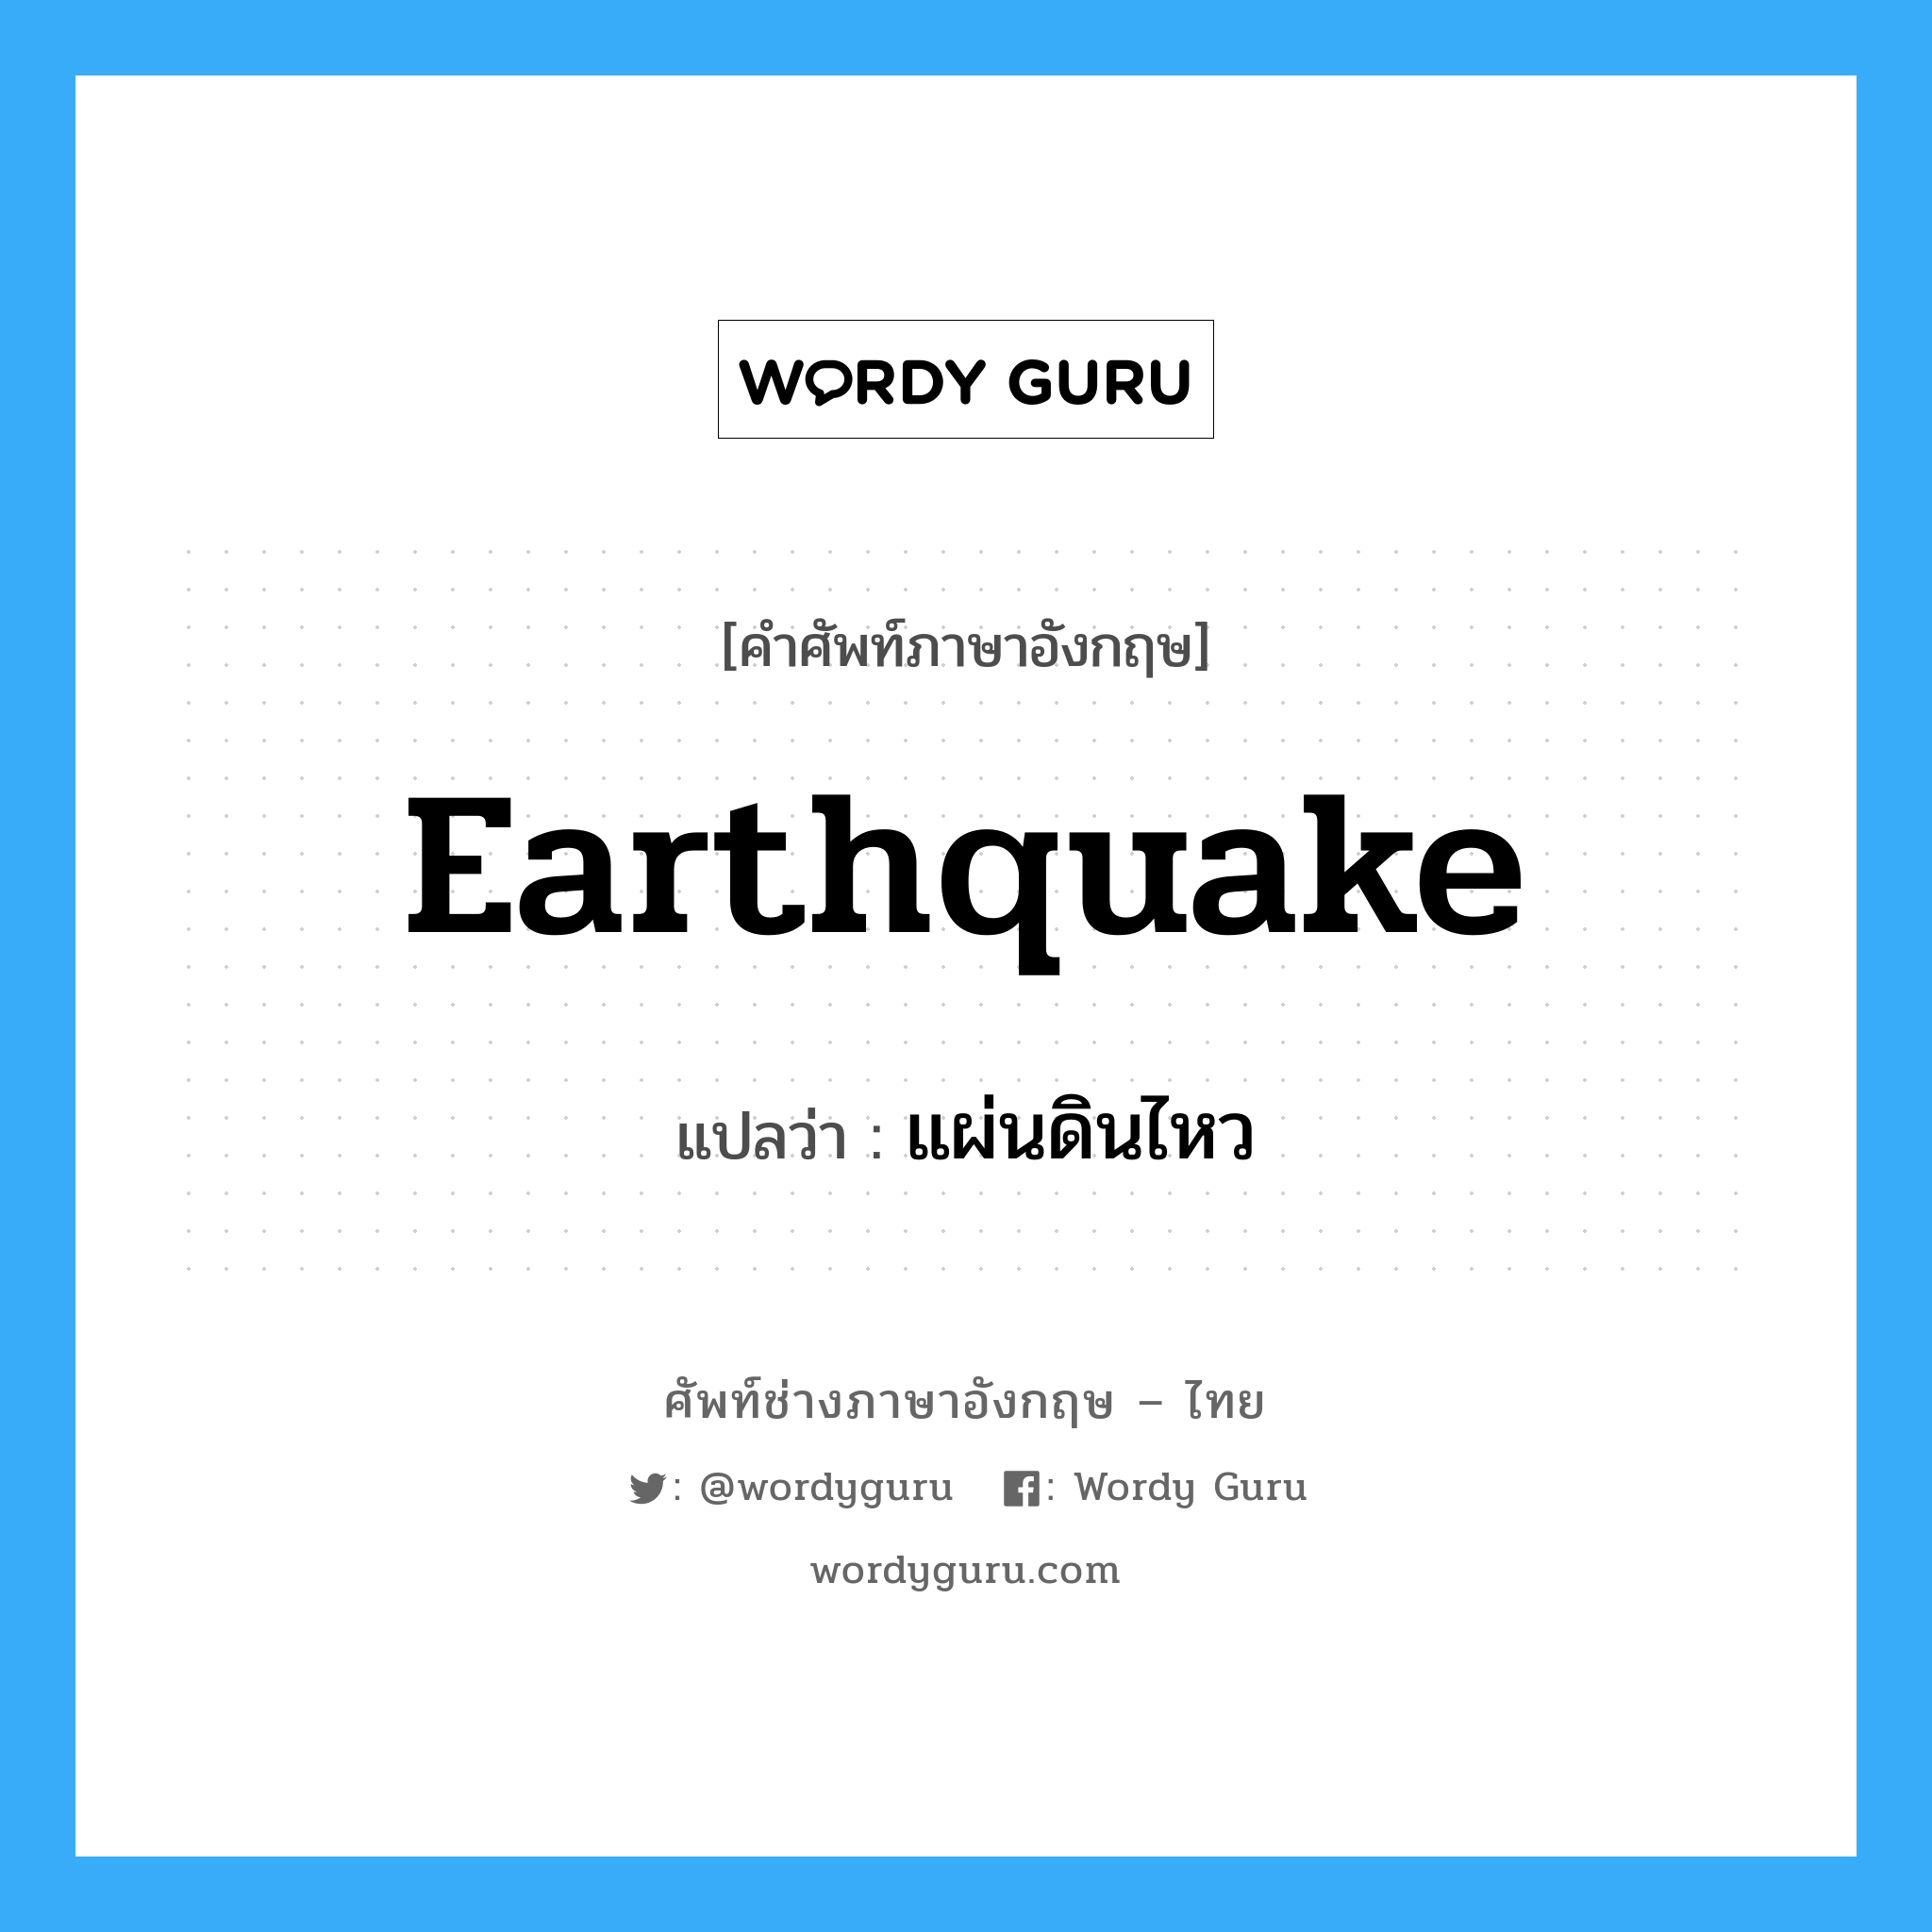 แผ่นดินไหว ภาษาอังกฤษ?, คำศัพท์ช่างภาษาอังกฤษ - ไทย แผ่นดินไหว คำศัพท์ภาษาอังกฤษ แผ่นดินไหว แปลว่า earthquake